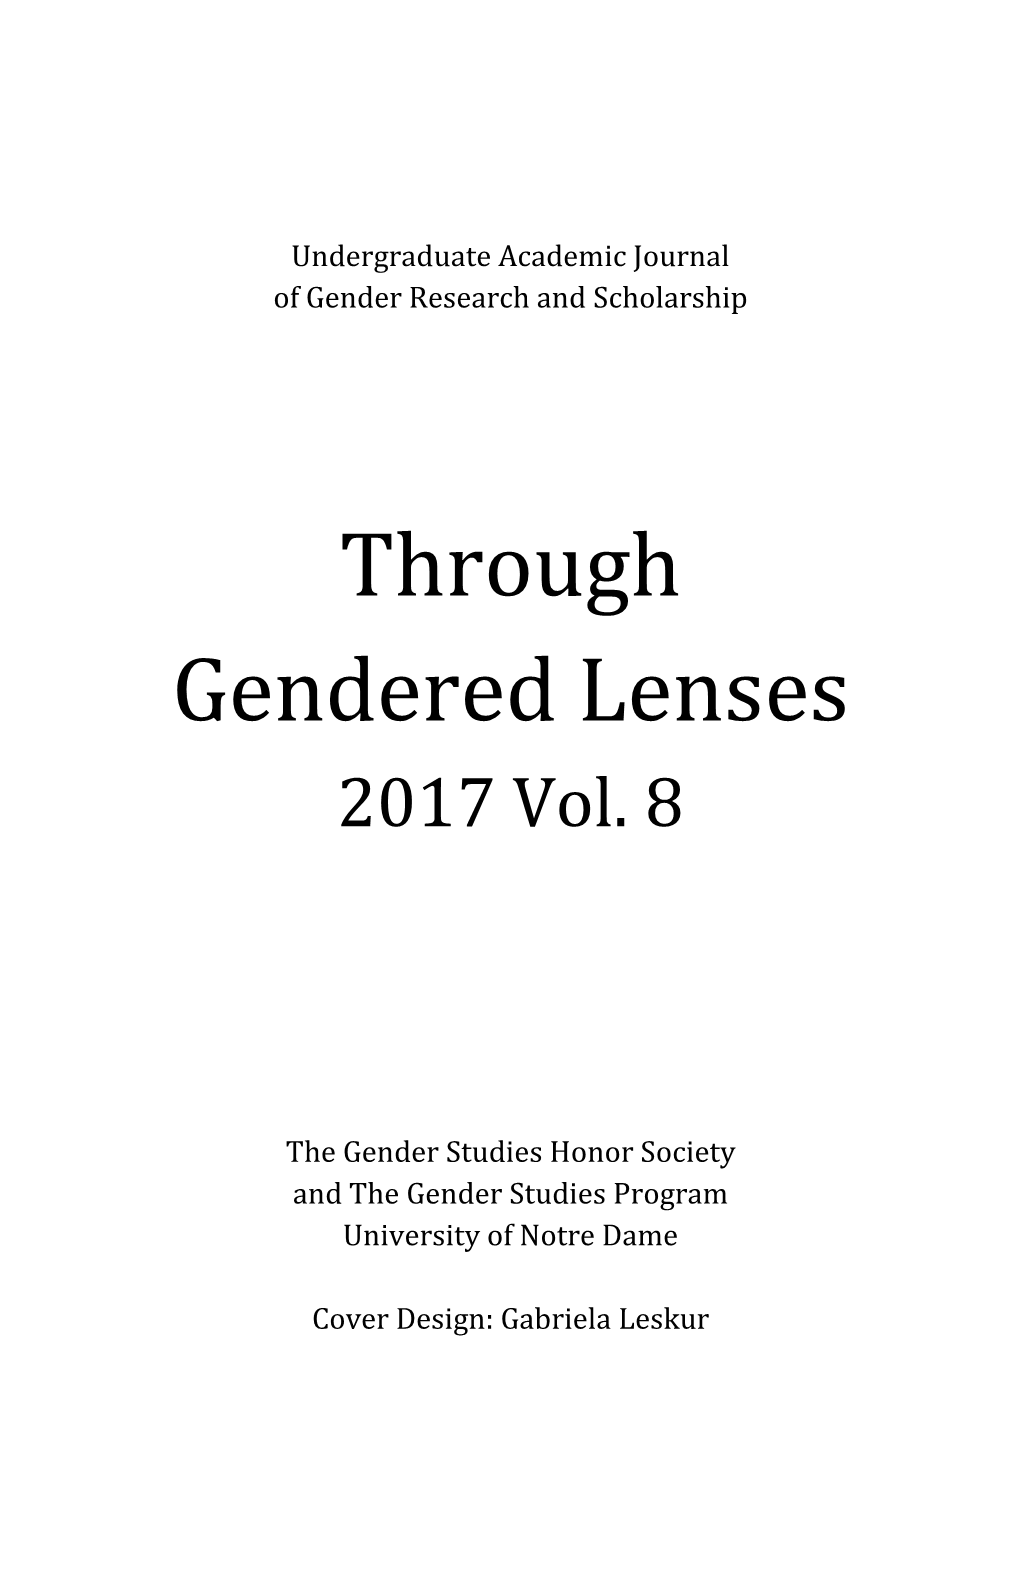 Through Gendered Lenses 2017 Vol